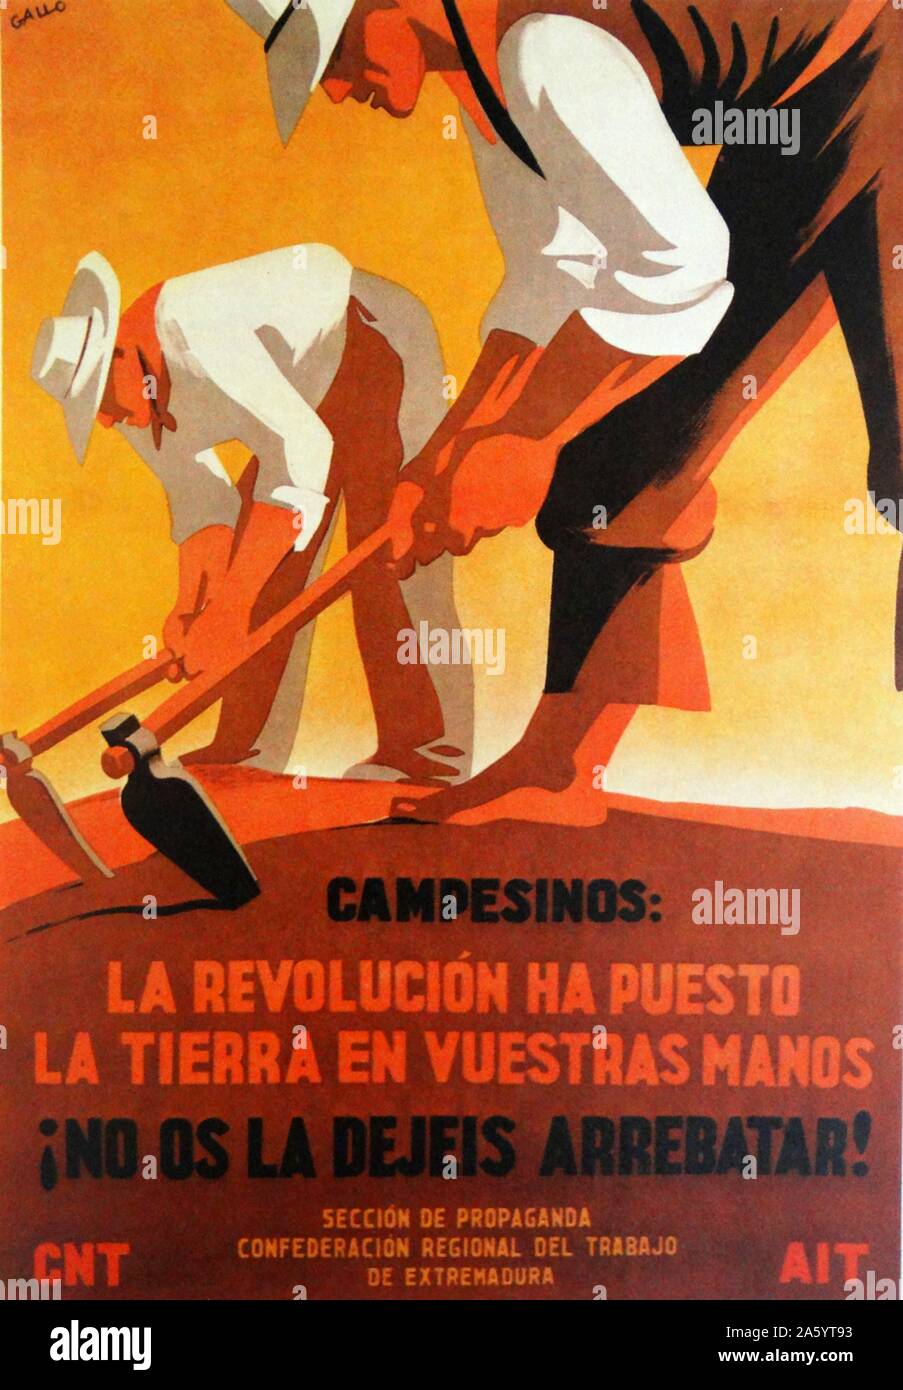 Affiche de propagande antifasciste CNT sur la propriété de la terre par le peuple, pendant la guerre civile espagnole Banque D'Images